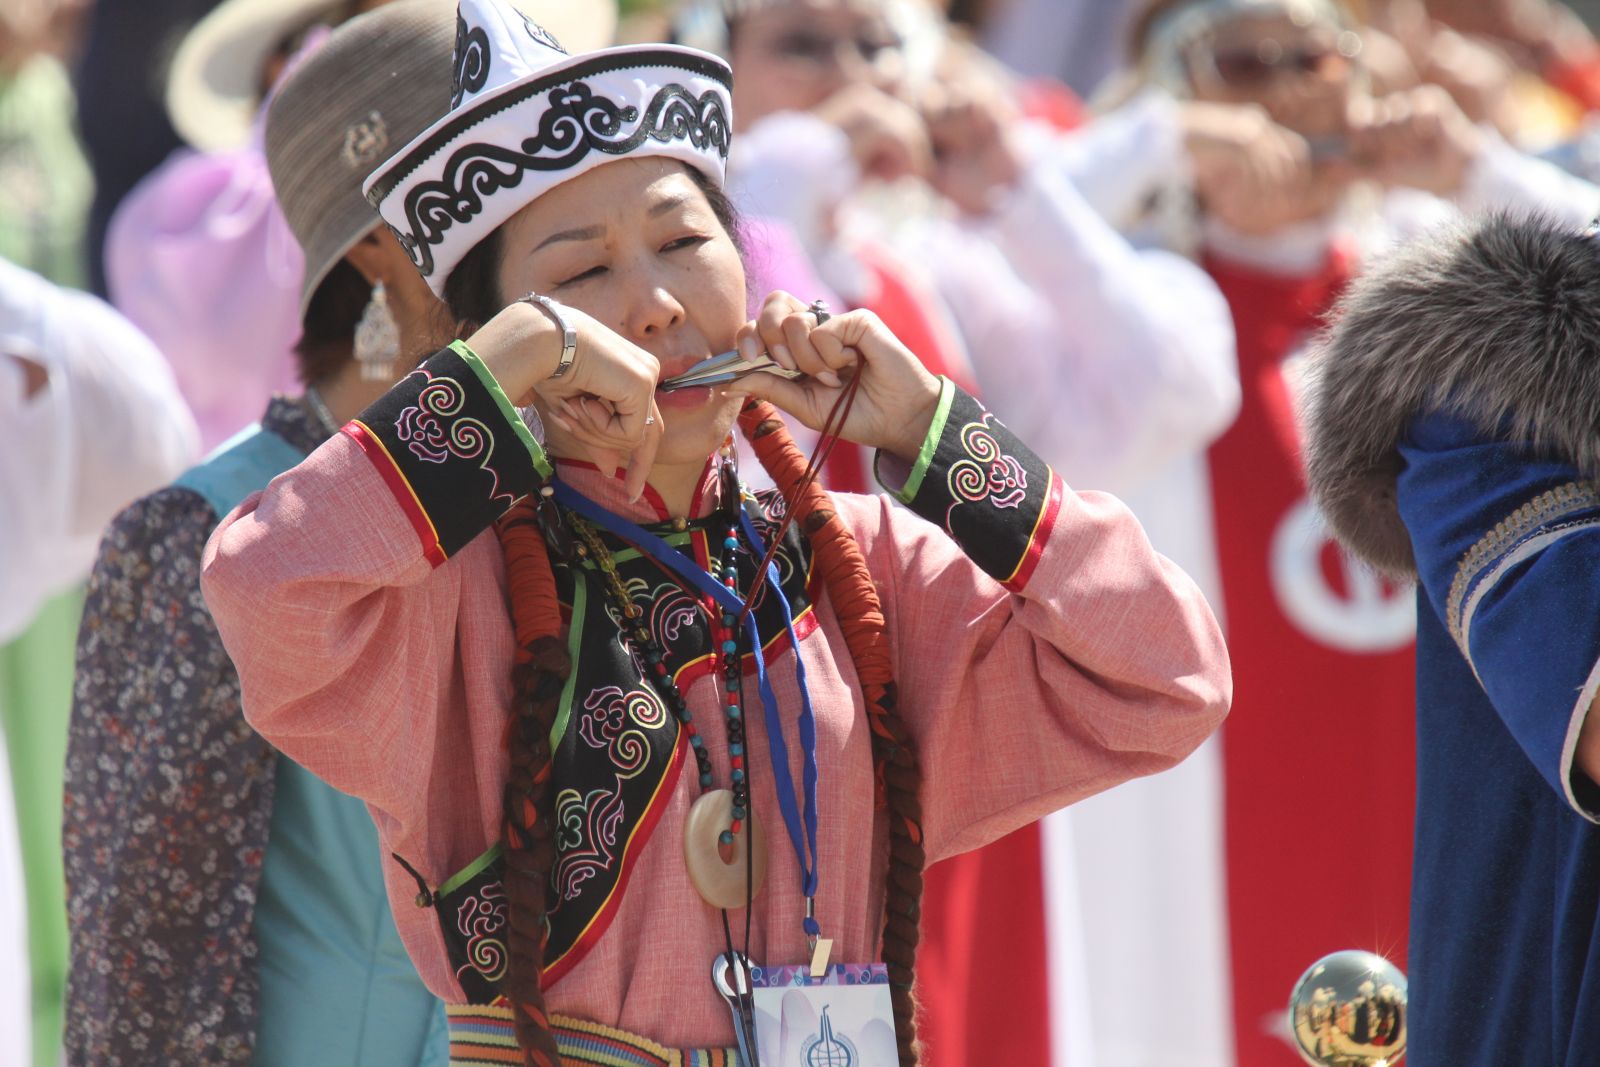 30 на якутском. Хомусисты Якутии. День хомуса в Якутии. Хомусисты Якутии известные. Игра на хомусе фото.